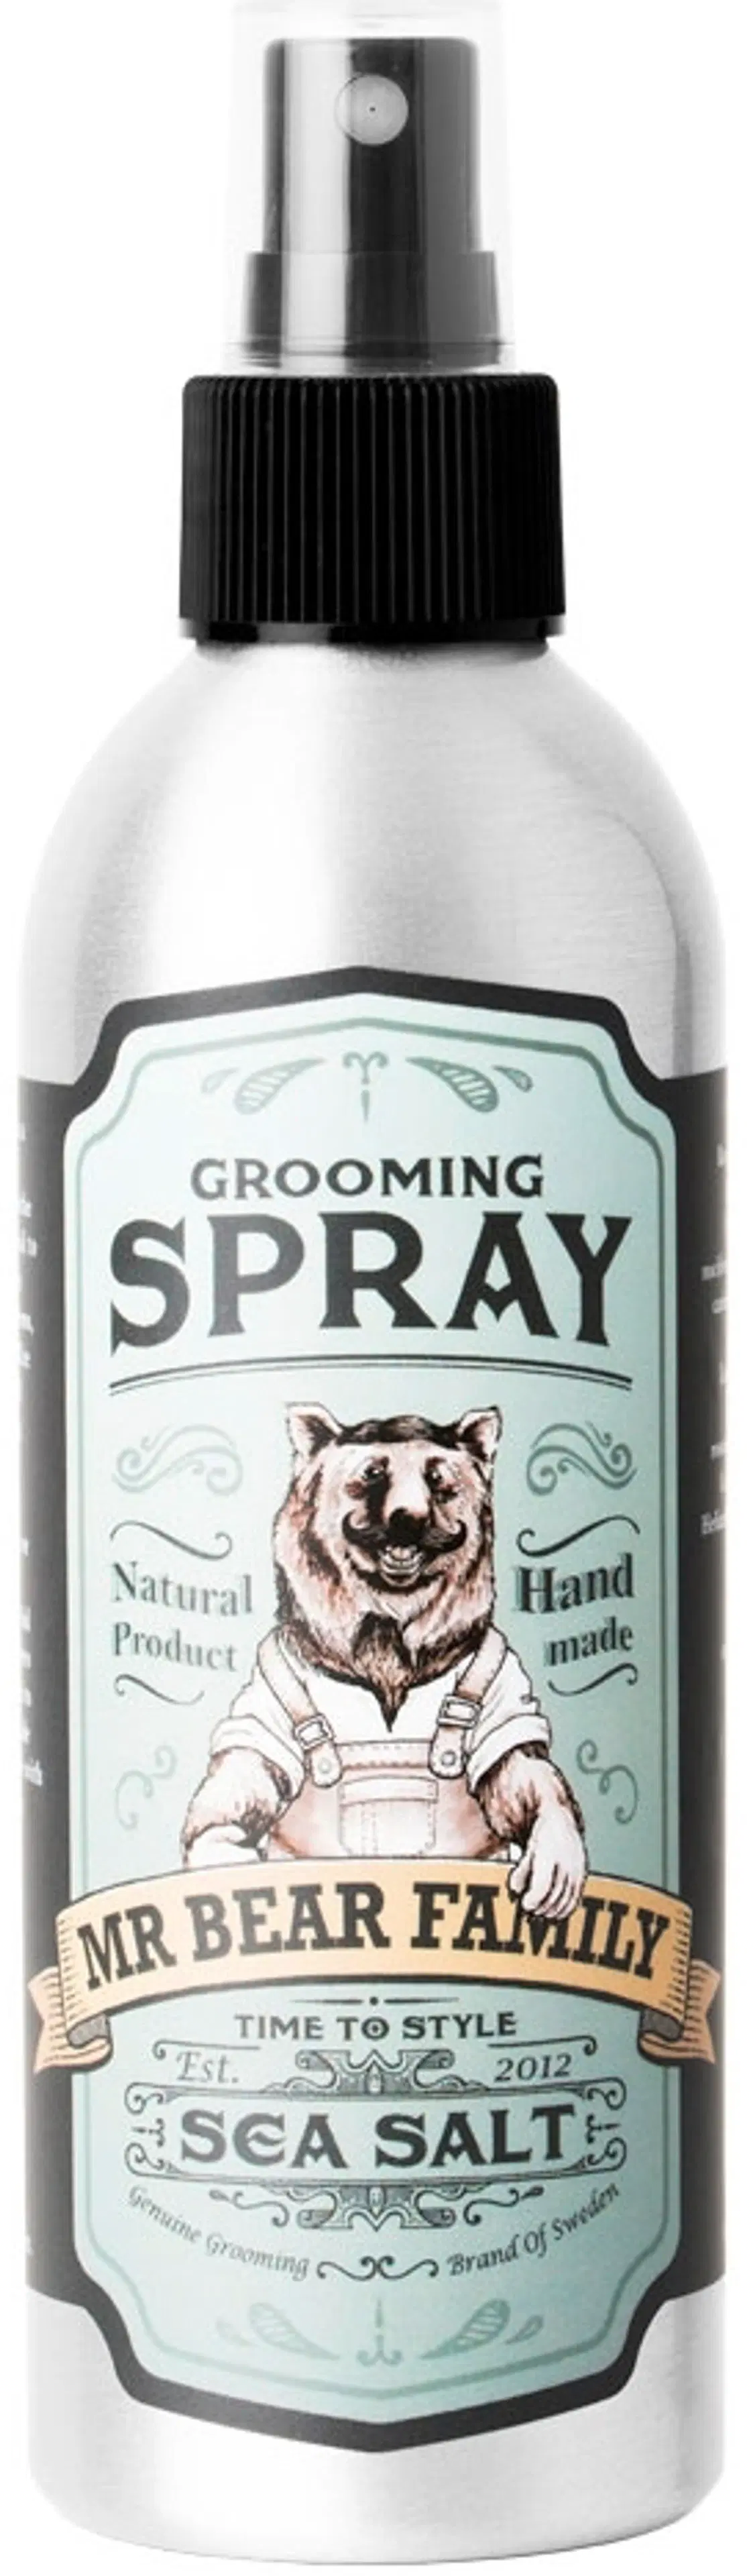 Mr Bear Family Grooming Spray merisuolasuihke 200 ml